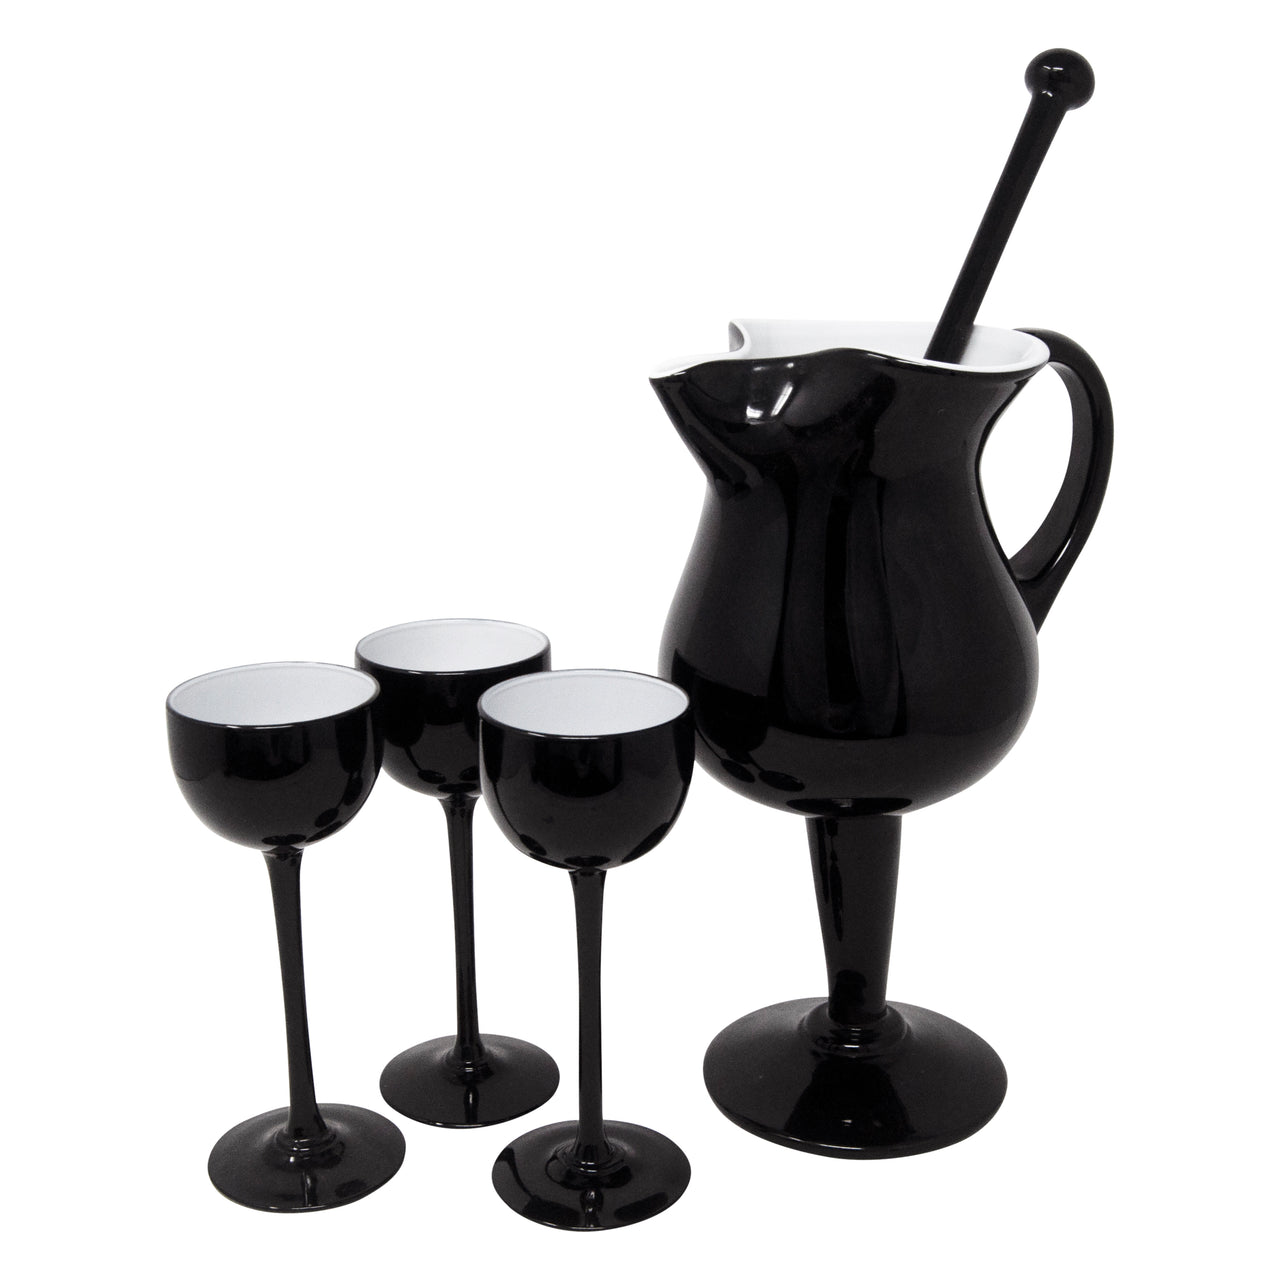 https://thehourshop.com/cdn/shop/products/7963-Vintage-Black-Pedestal-Cocktail-Pitcher-Goblets-Glasses-Set_1280x1280.jpg?v=1600024471